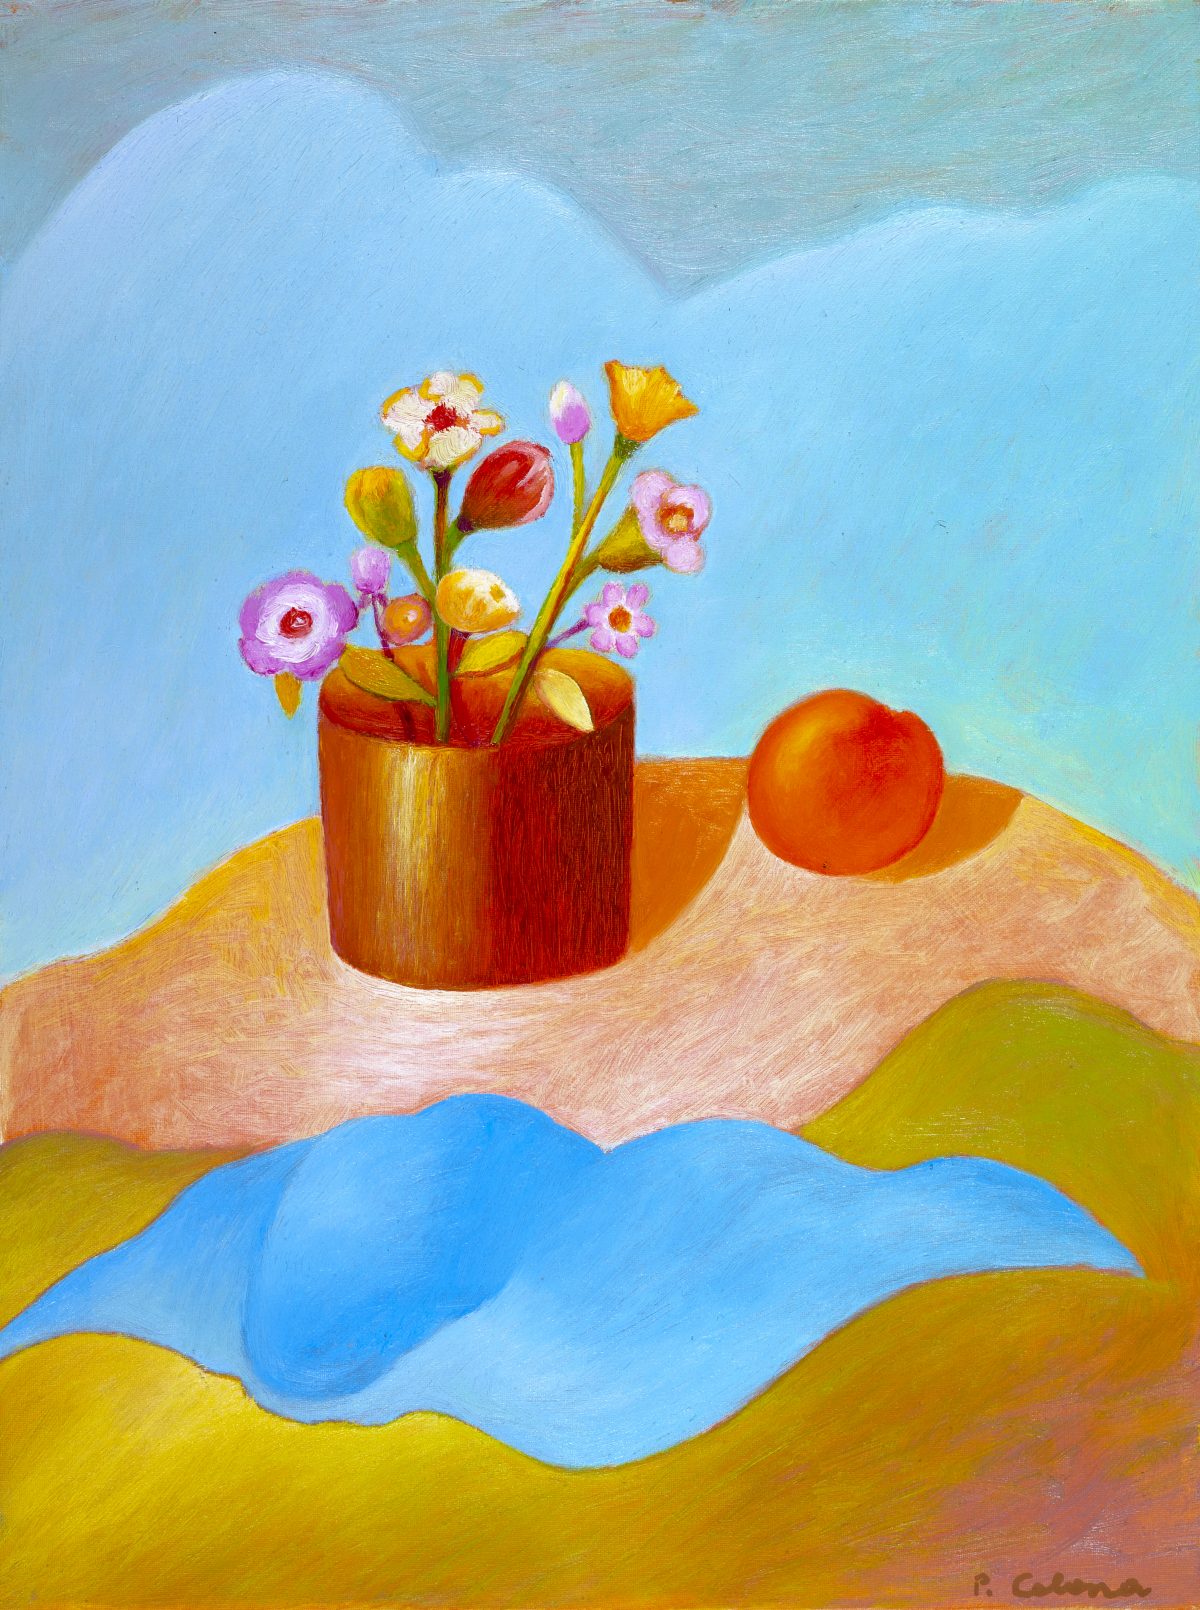 Vaso con fiori e arancia, ca. 1995
Olio su tela, 50 x 40 cm,
Collezione privata,
NMV304